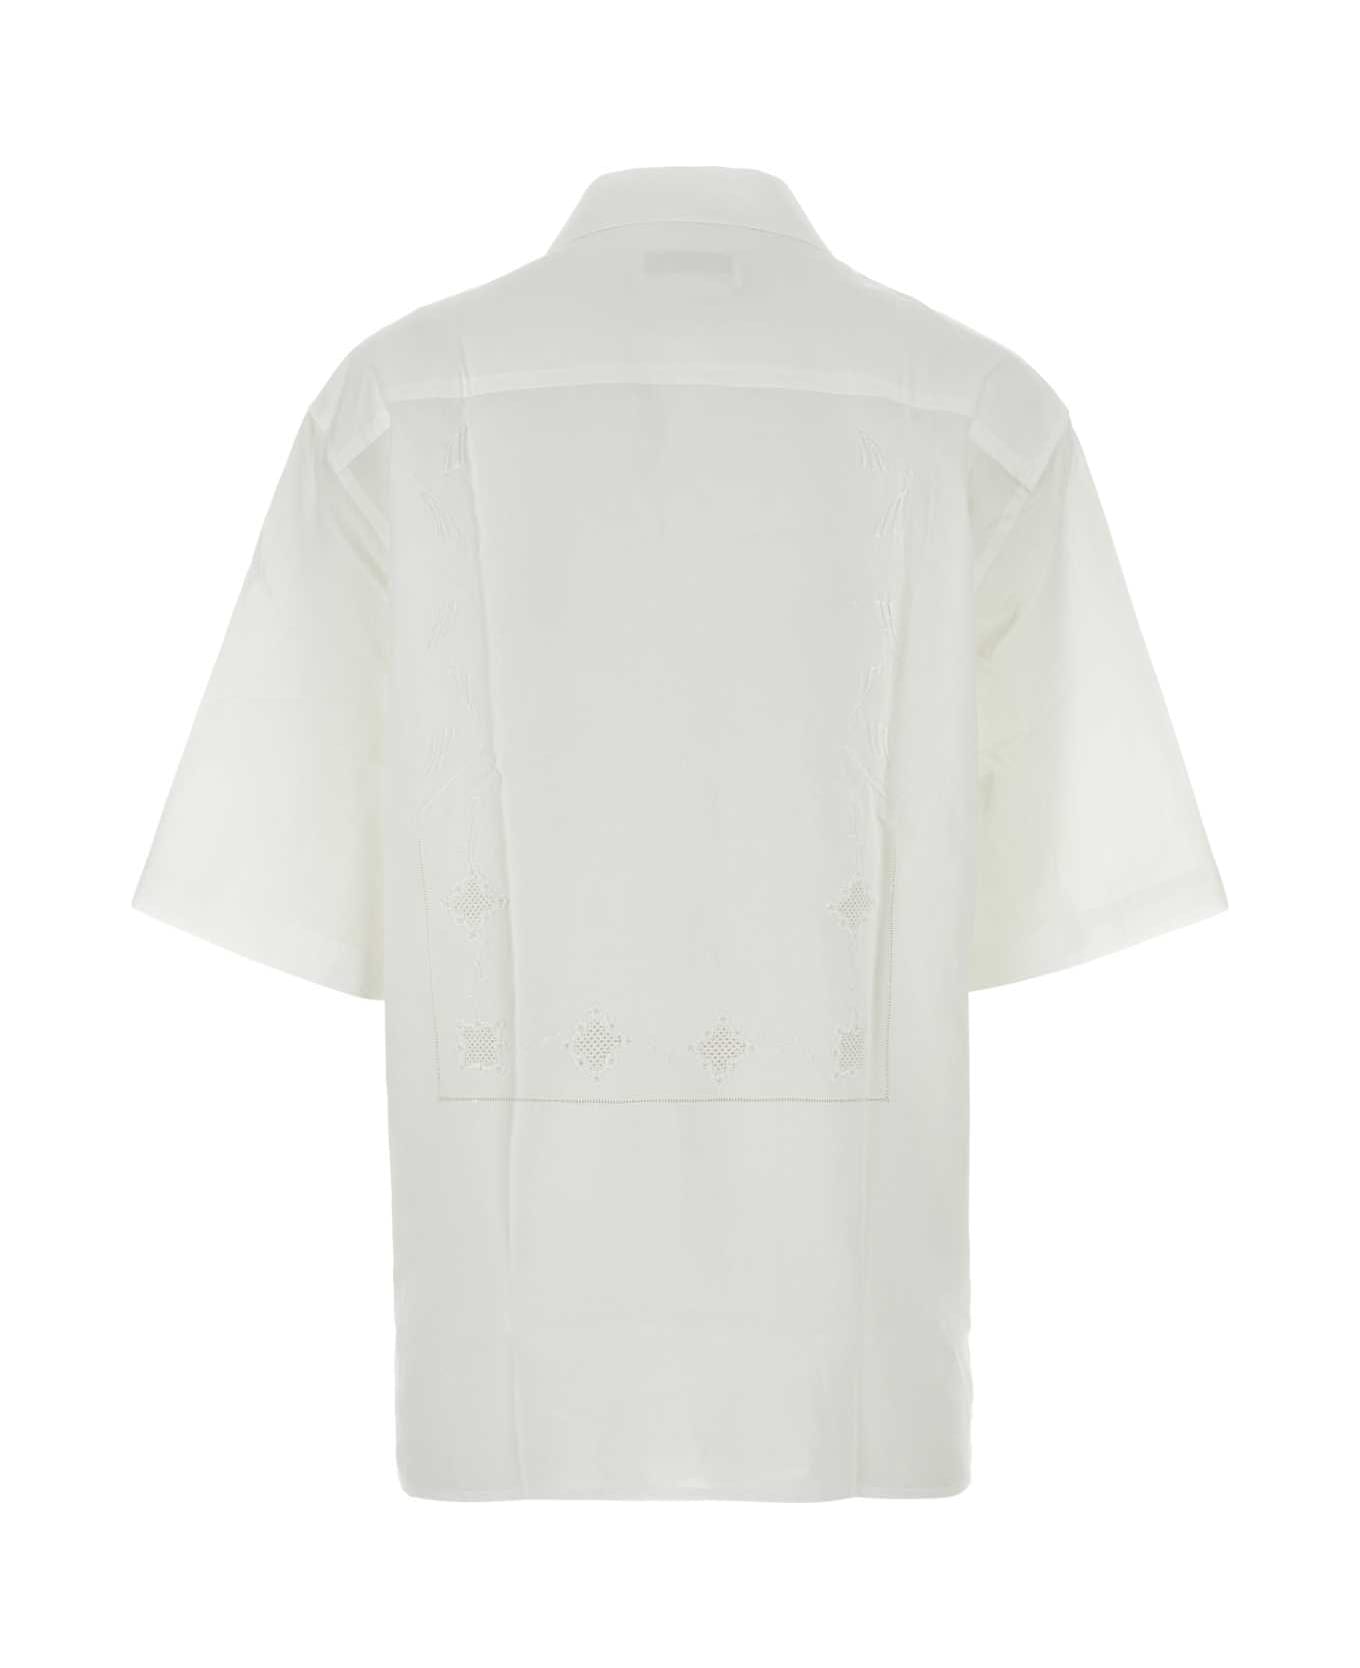 Marine Serre White Cotton Shirt - WHITE シャツ